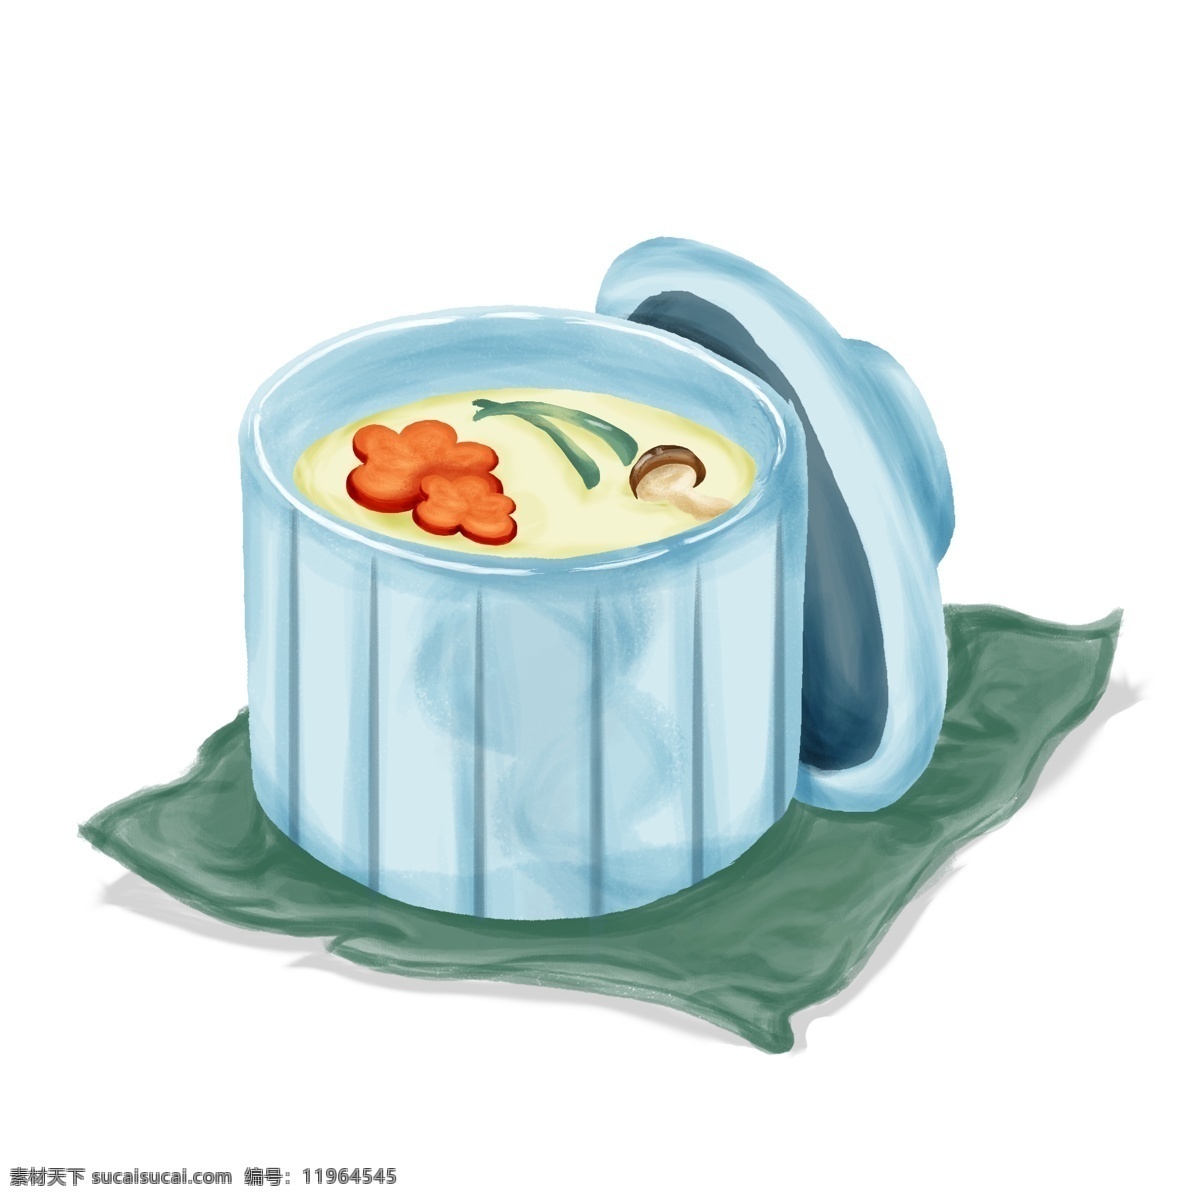 清新 蓝色 碗装 日式 蛋汤 手绘 元素 吃货节 日式蛋汤 日本美食 日本 葱 香菇 绿色 布 手绘元素 配图